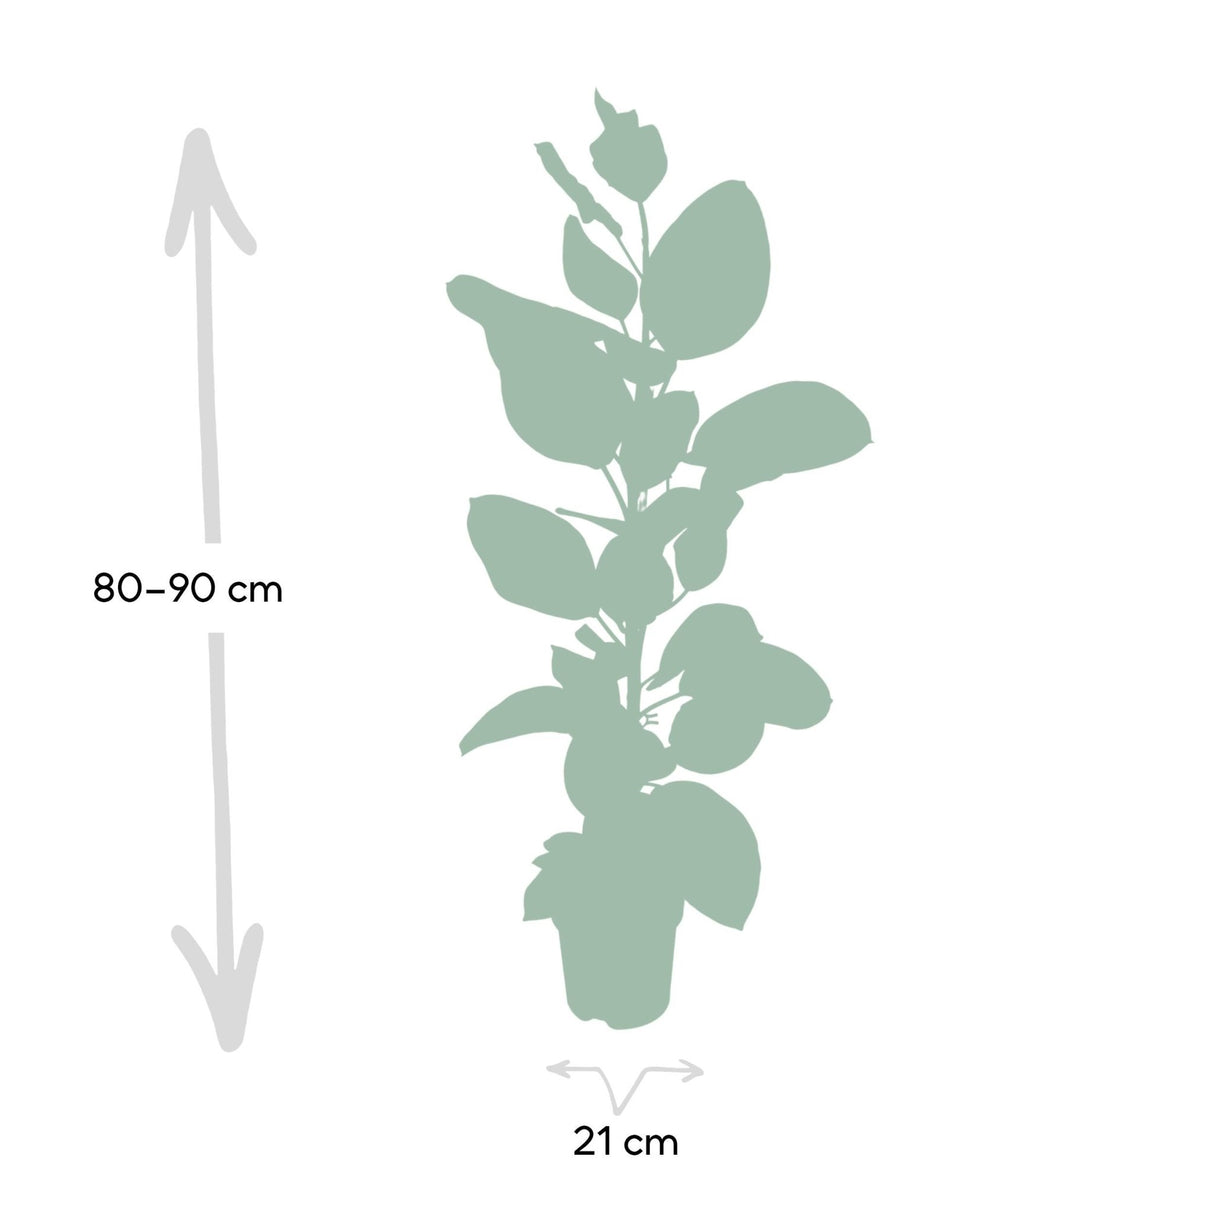 Livraison plante - Ficus Altissima - h85cm, Ø21cm - grande plante d'intérieur